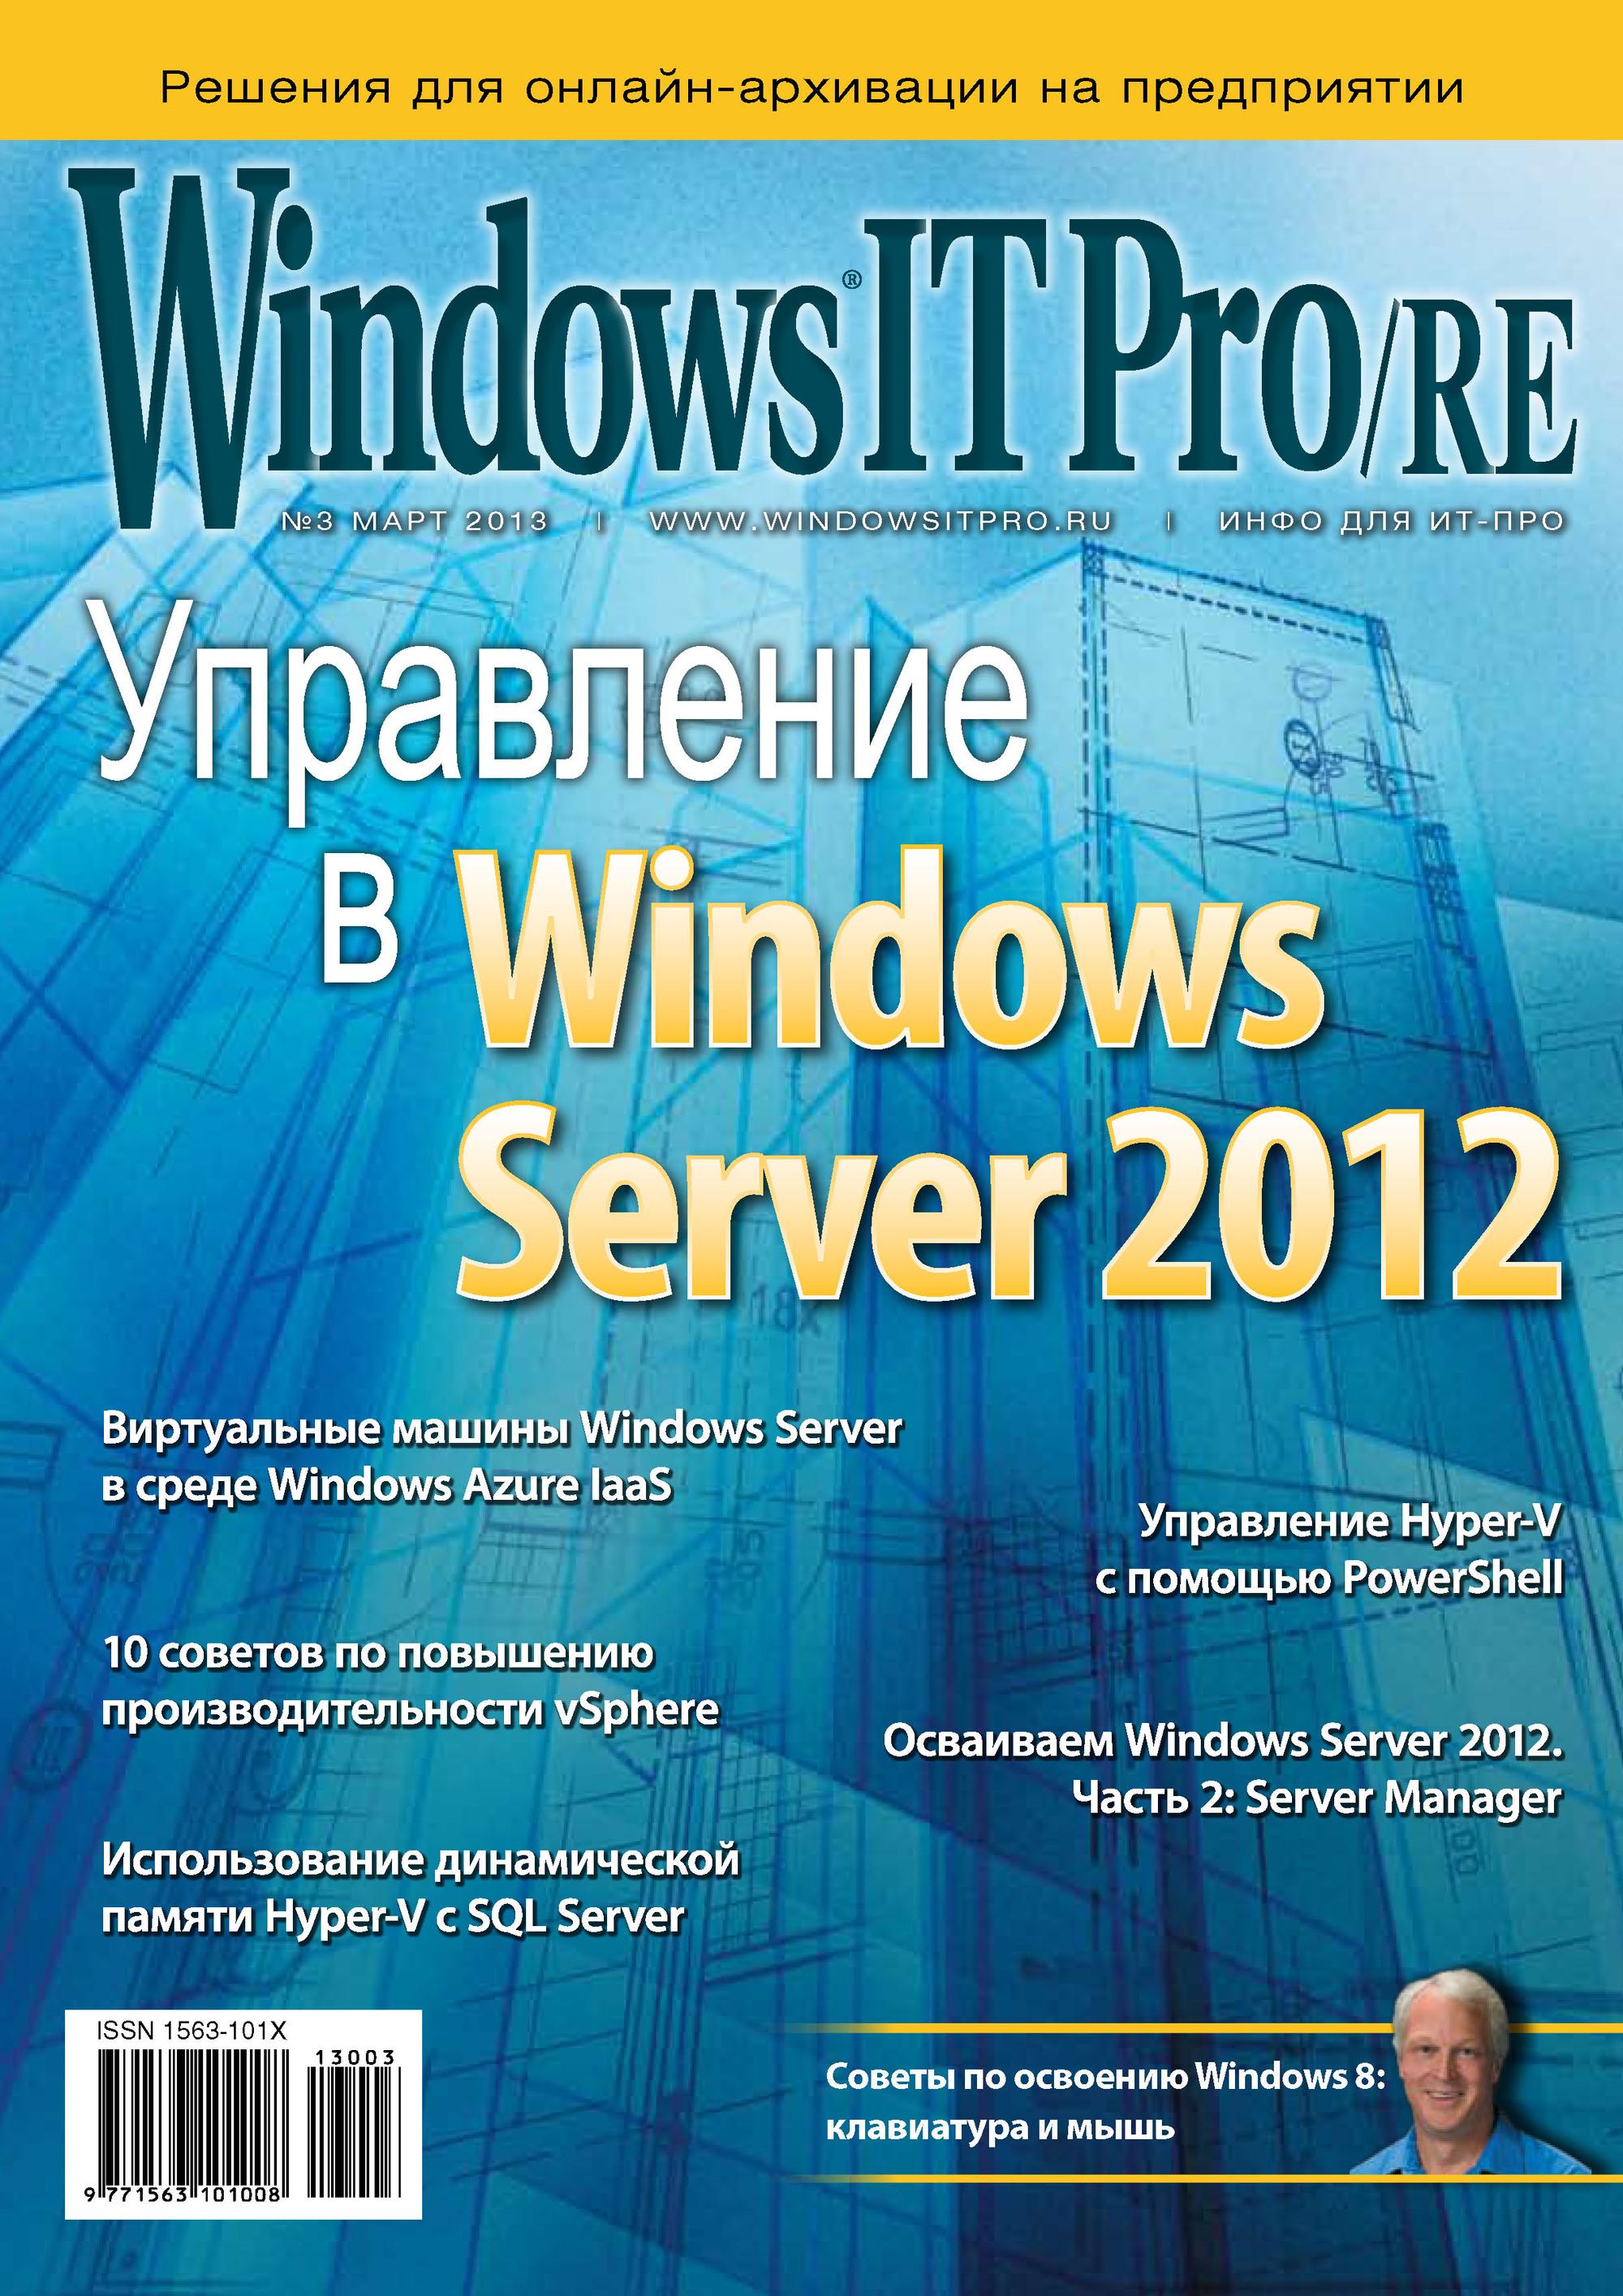 Книга Windows IT Pro 2013 Windows IT Pro/RE №03/2013 созданная Открытые системы, Открытые системы может относится к жанру компьютерные журналы, ОС и сети. Стоимость электронной книги Windows IT Pro/RE №03/2013 с идентификатором 4987640 составляет 484.00 руб.